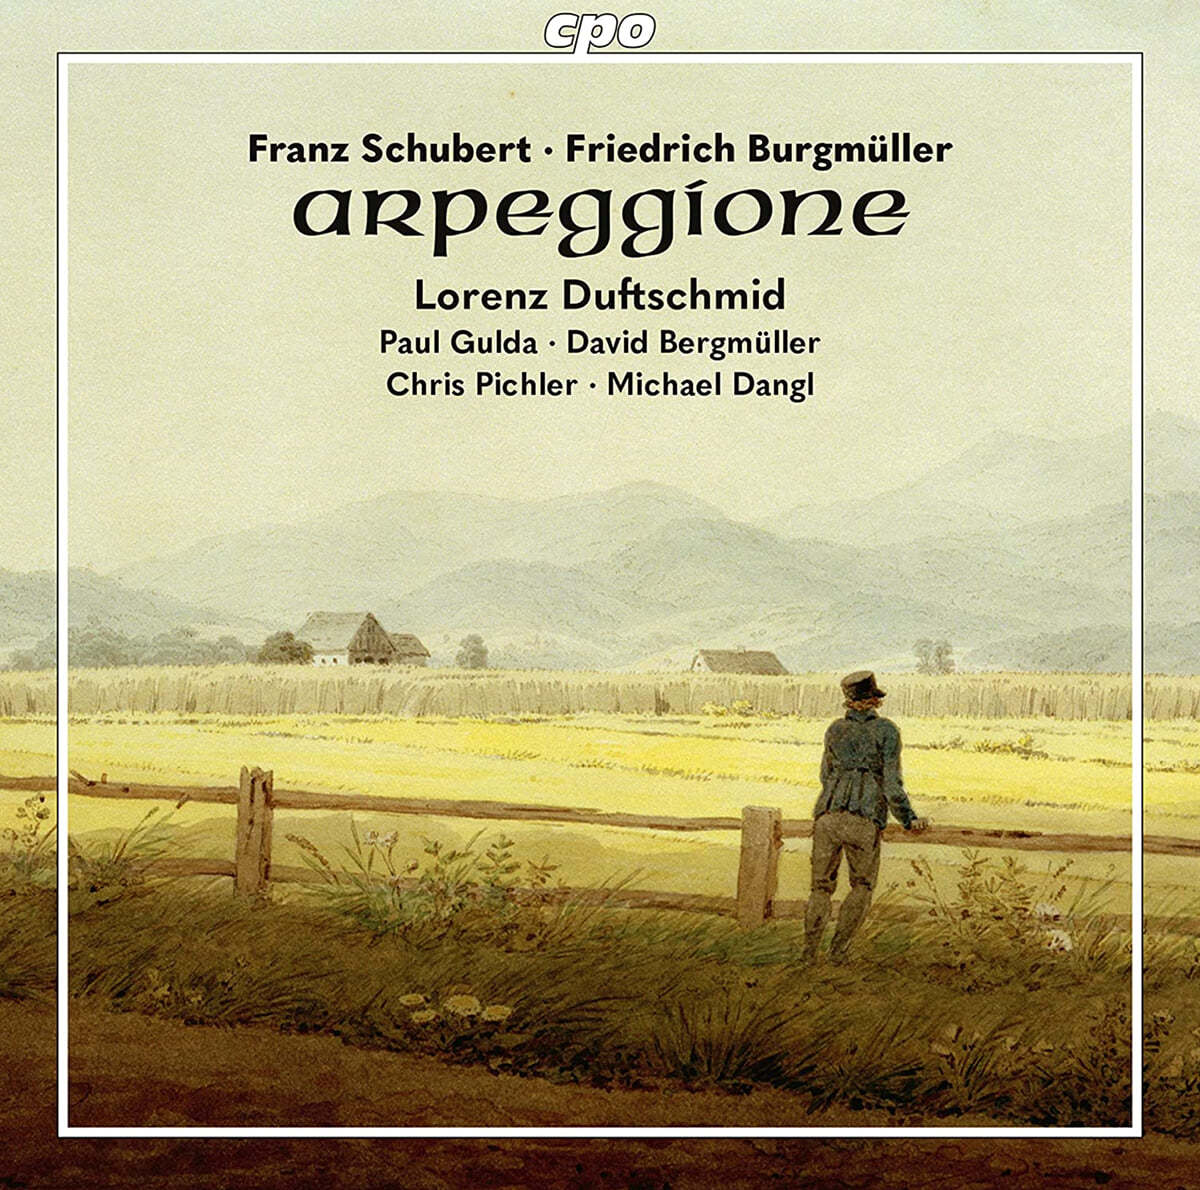 슈베르트 &#39;아르페지오네&#39; 소나타와 부르크뮐러의 녹턴을 비롯한 아르페지오네 작품들 (Arpeggione - Schubert &amp; Burgmuller)